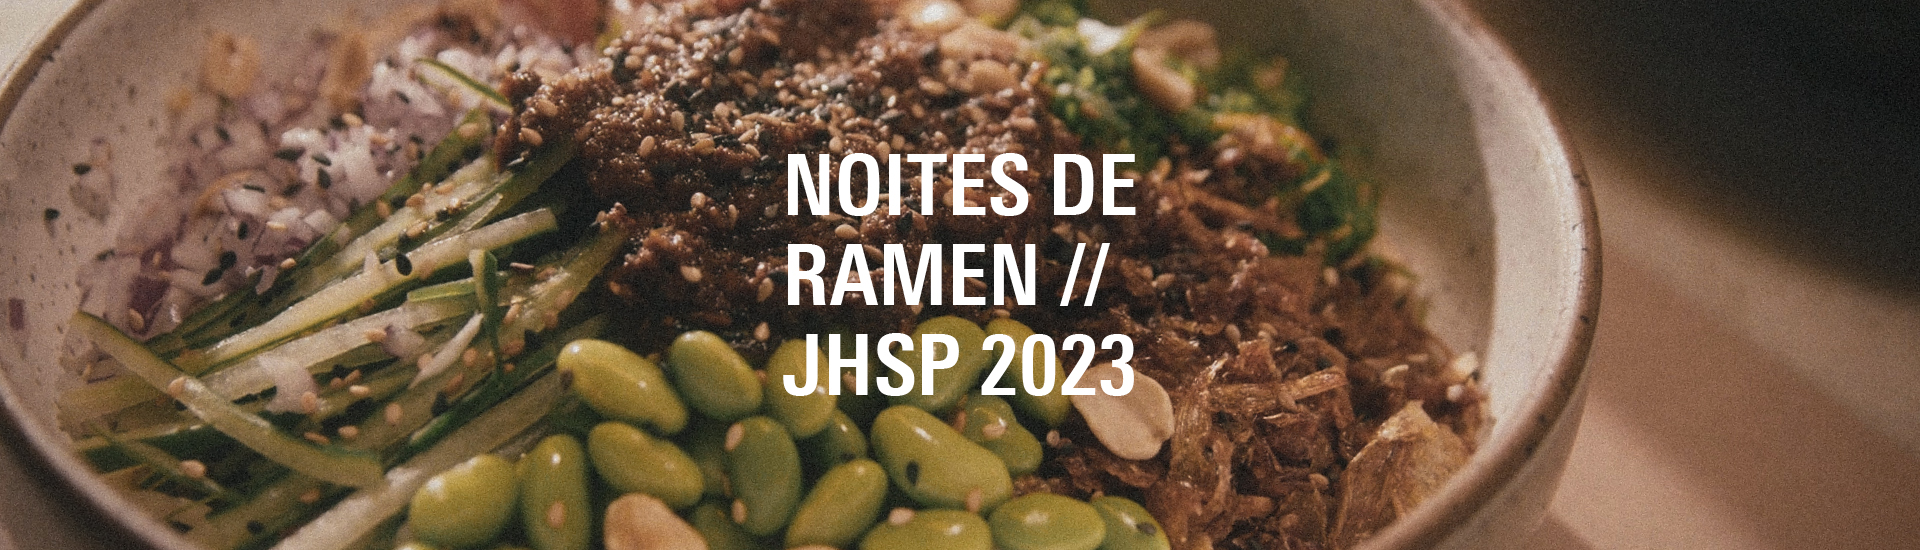 Noites de Ramen JHSP 2023